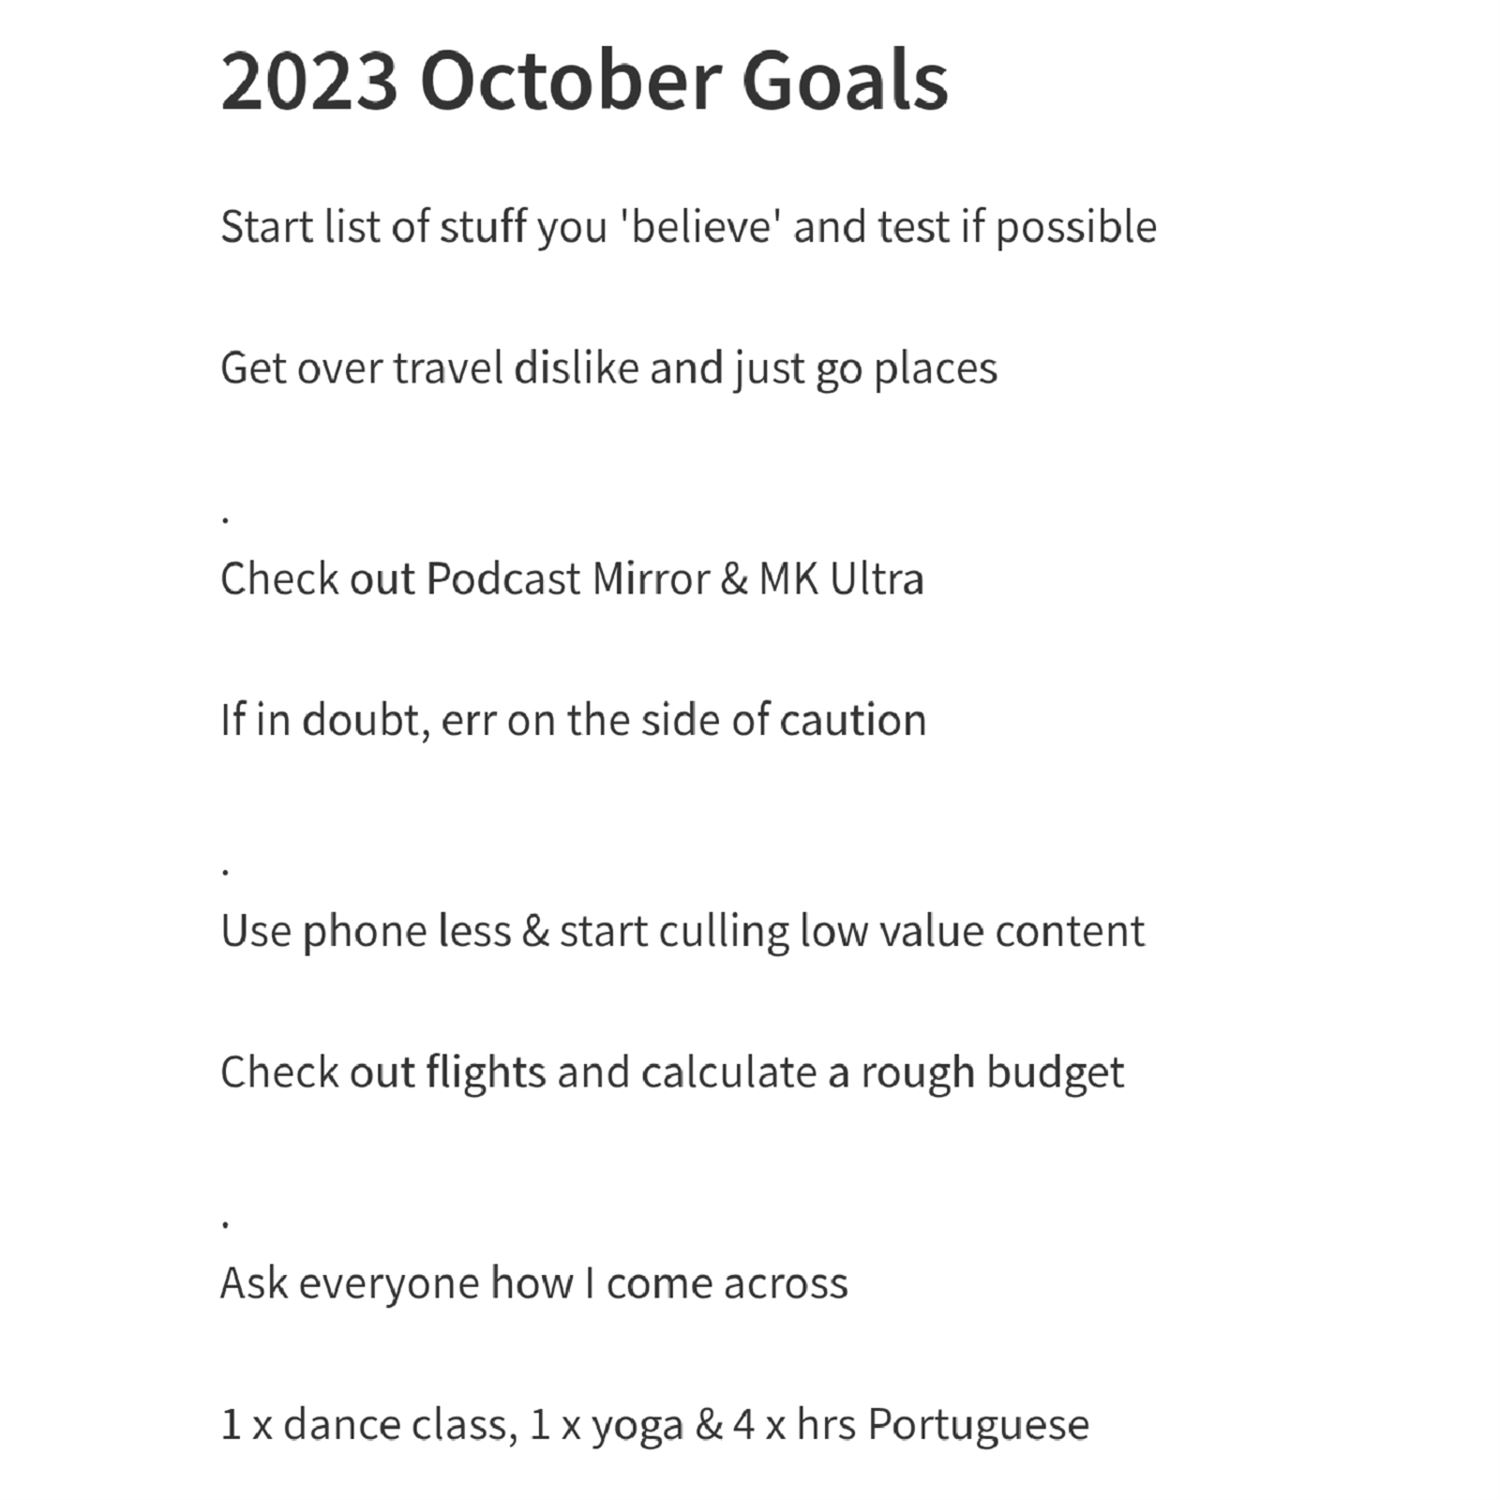 Kyrin's October 2023 goals